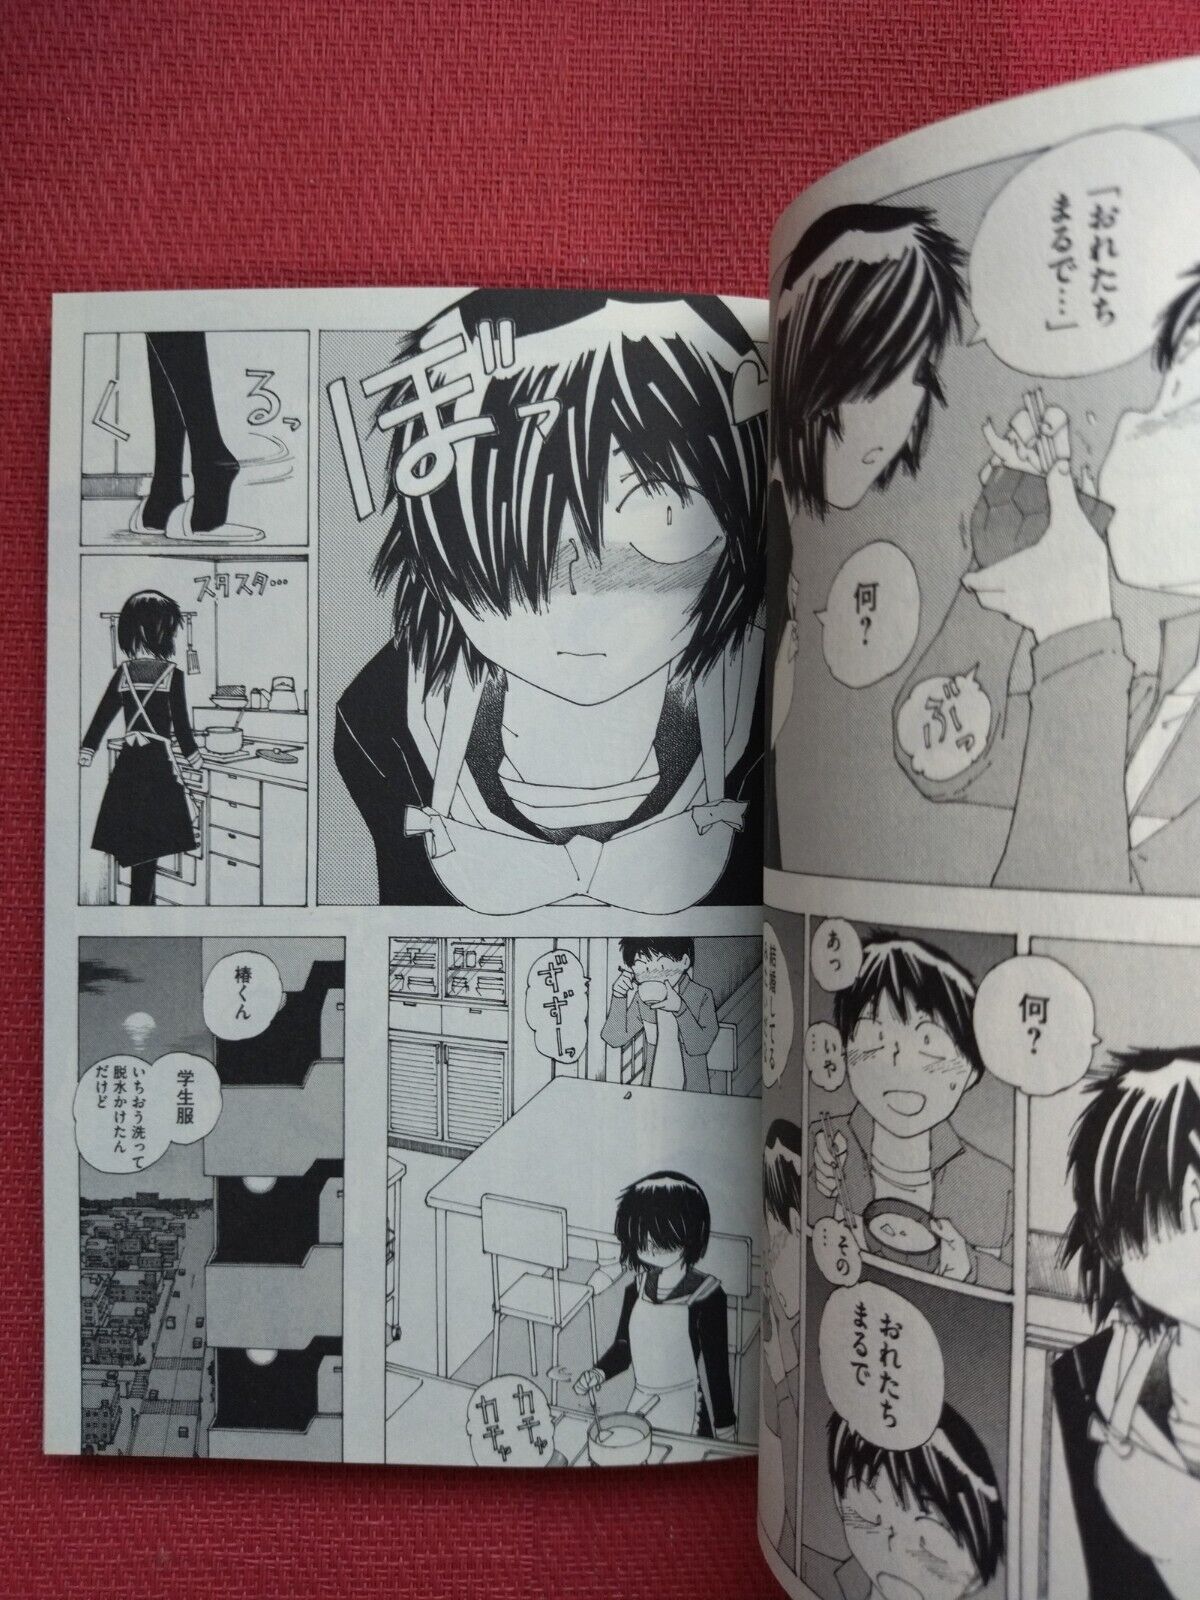 JAPAN Riichi Ueshiba manga Mysterious Girlfriend X/Nazo no Kanojo X 8  Limited